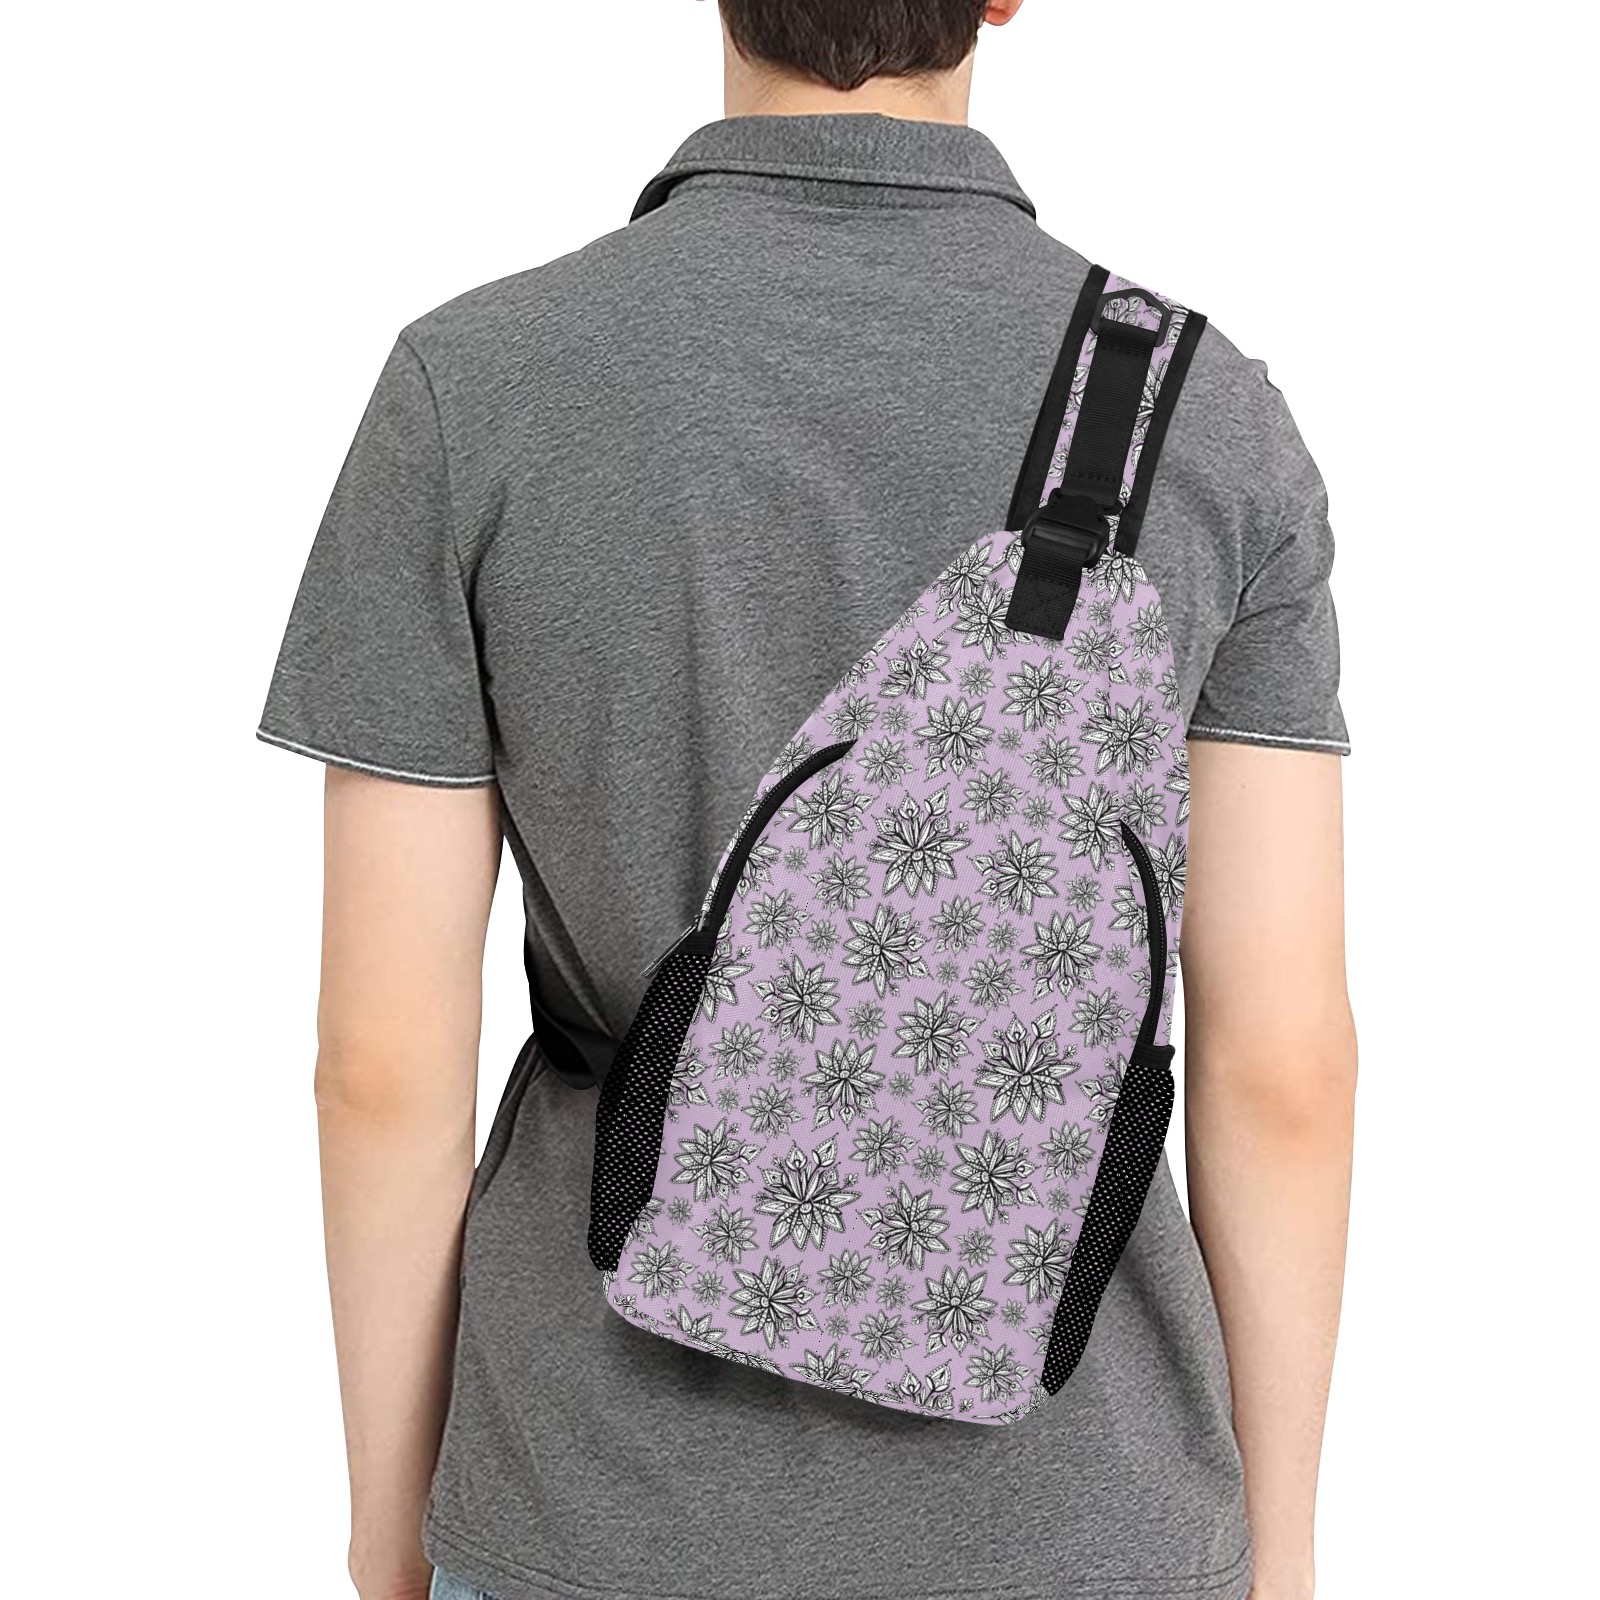 Creekside Floret - lilac Men's Casual Chest Bag (Model 1729)